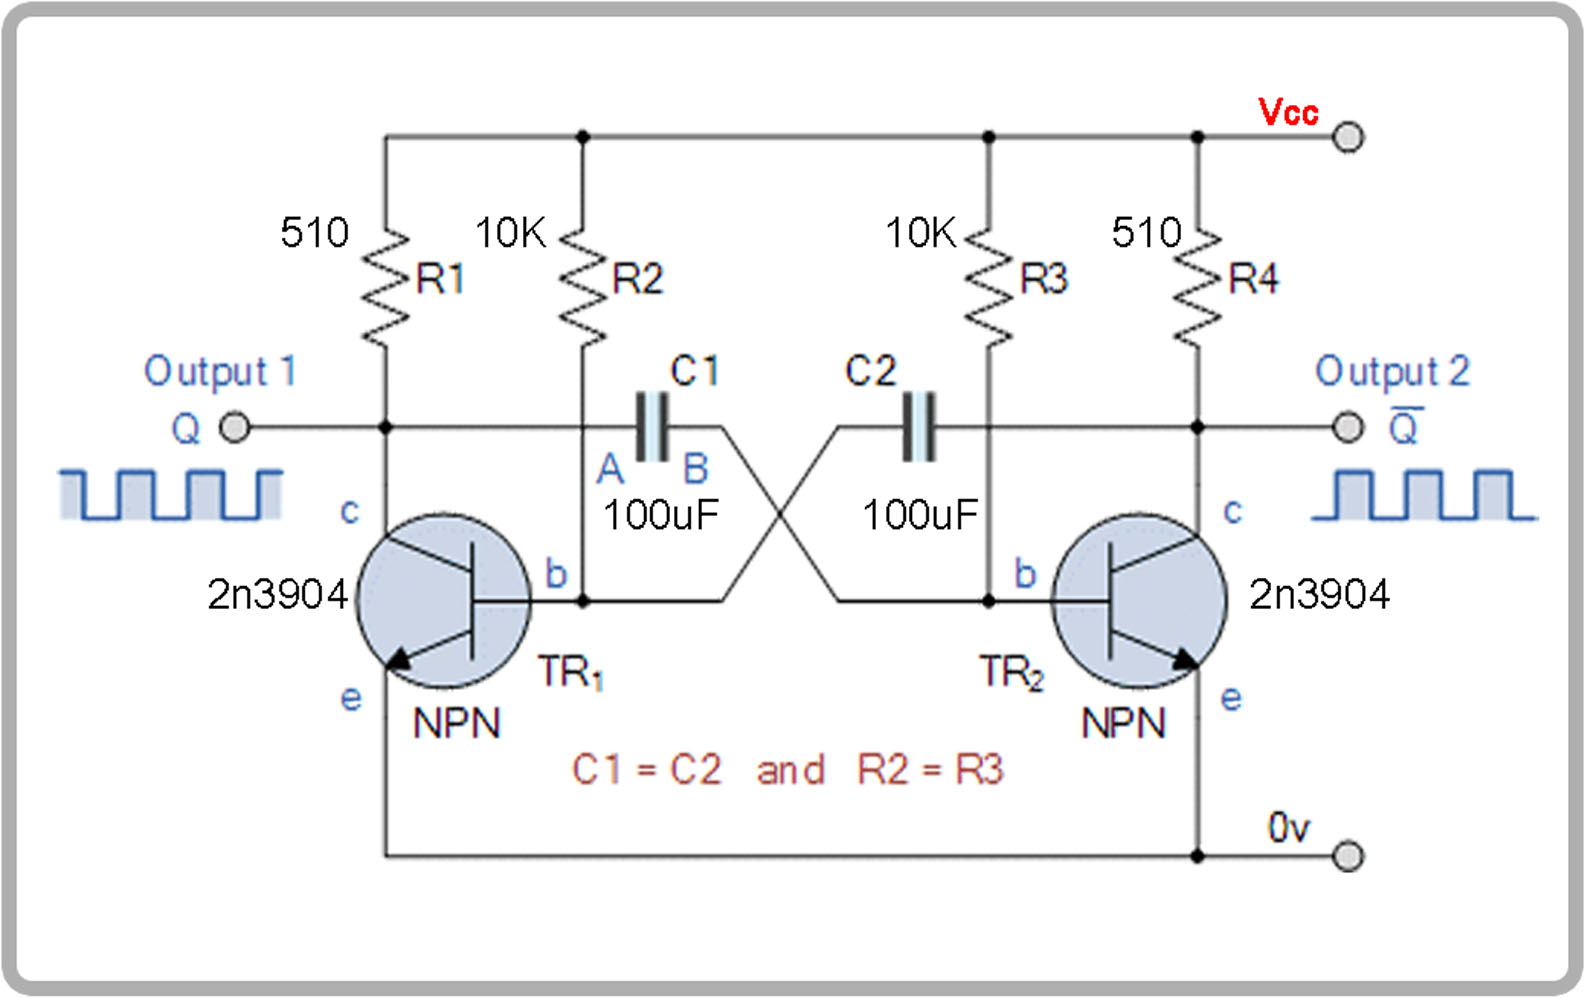 multivibrator RC oscillator scheamtic with values